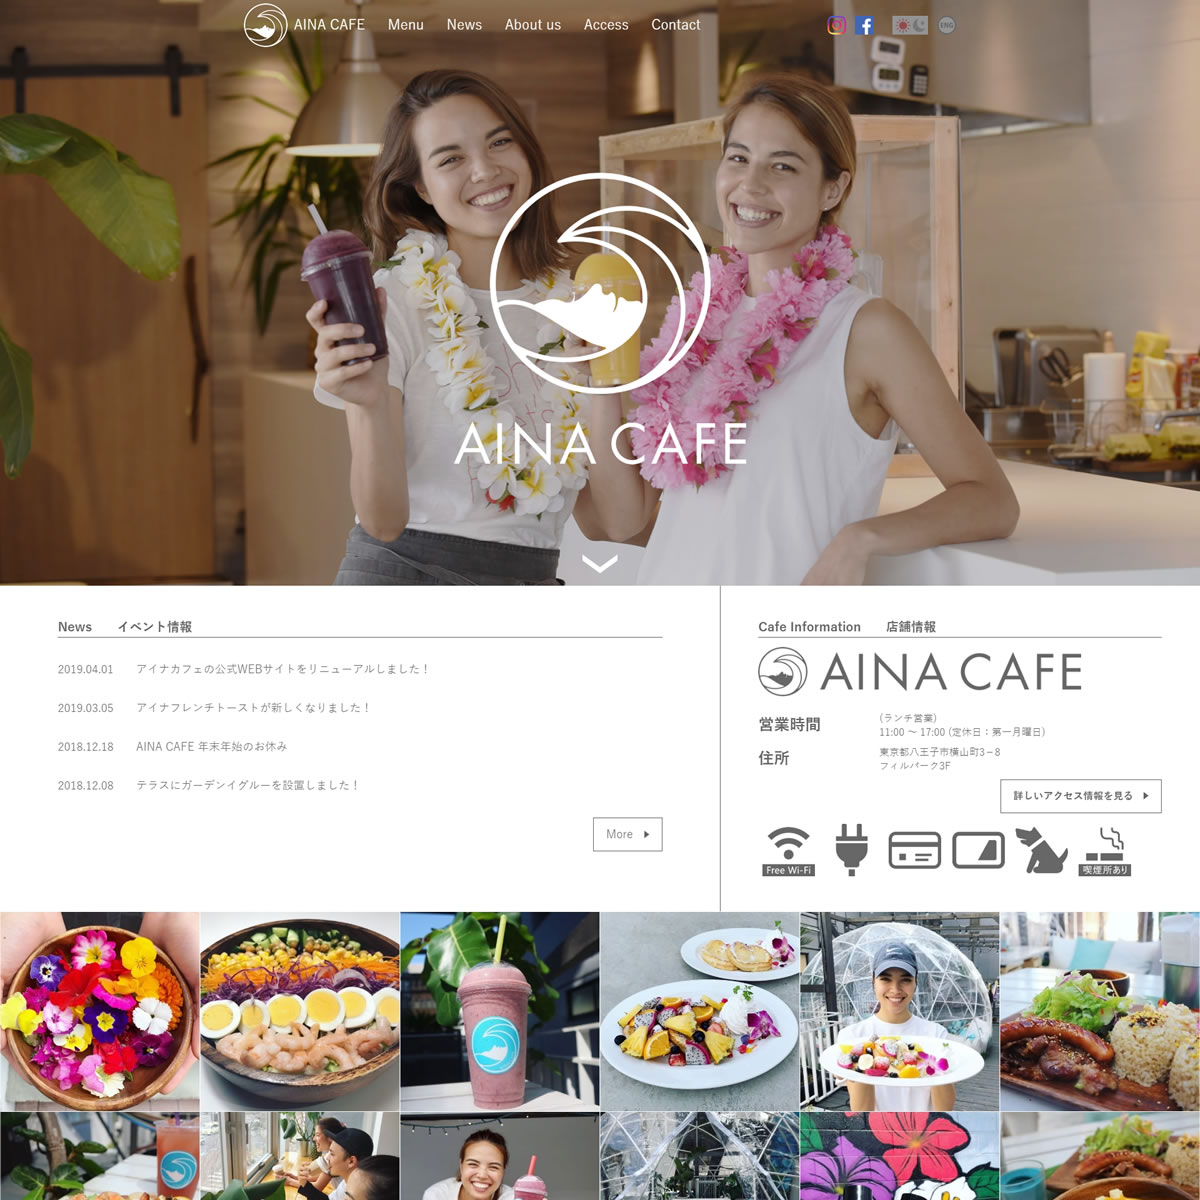 Aina Café's new website